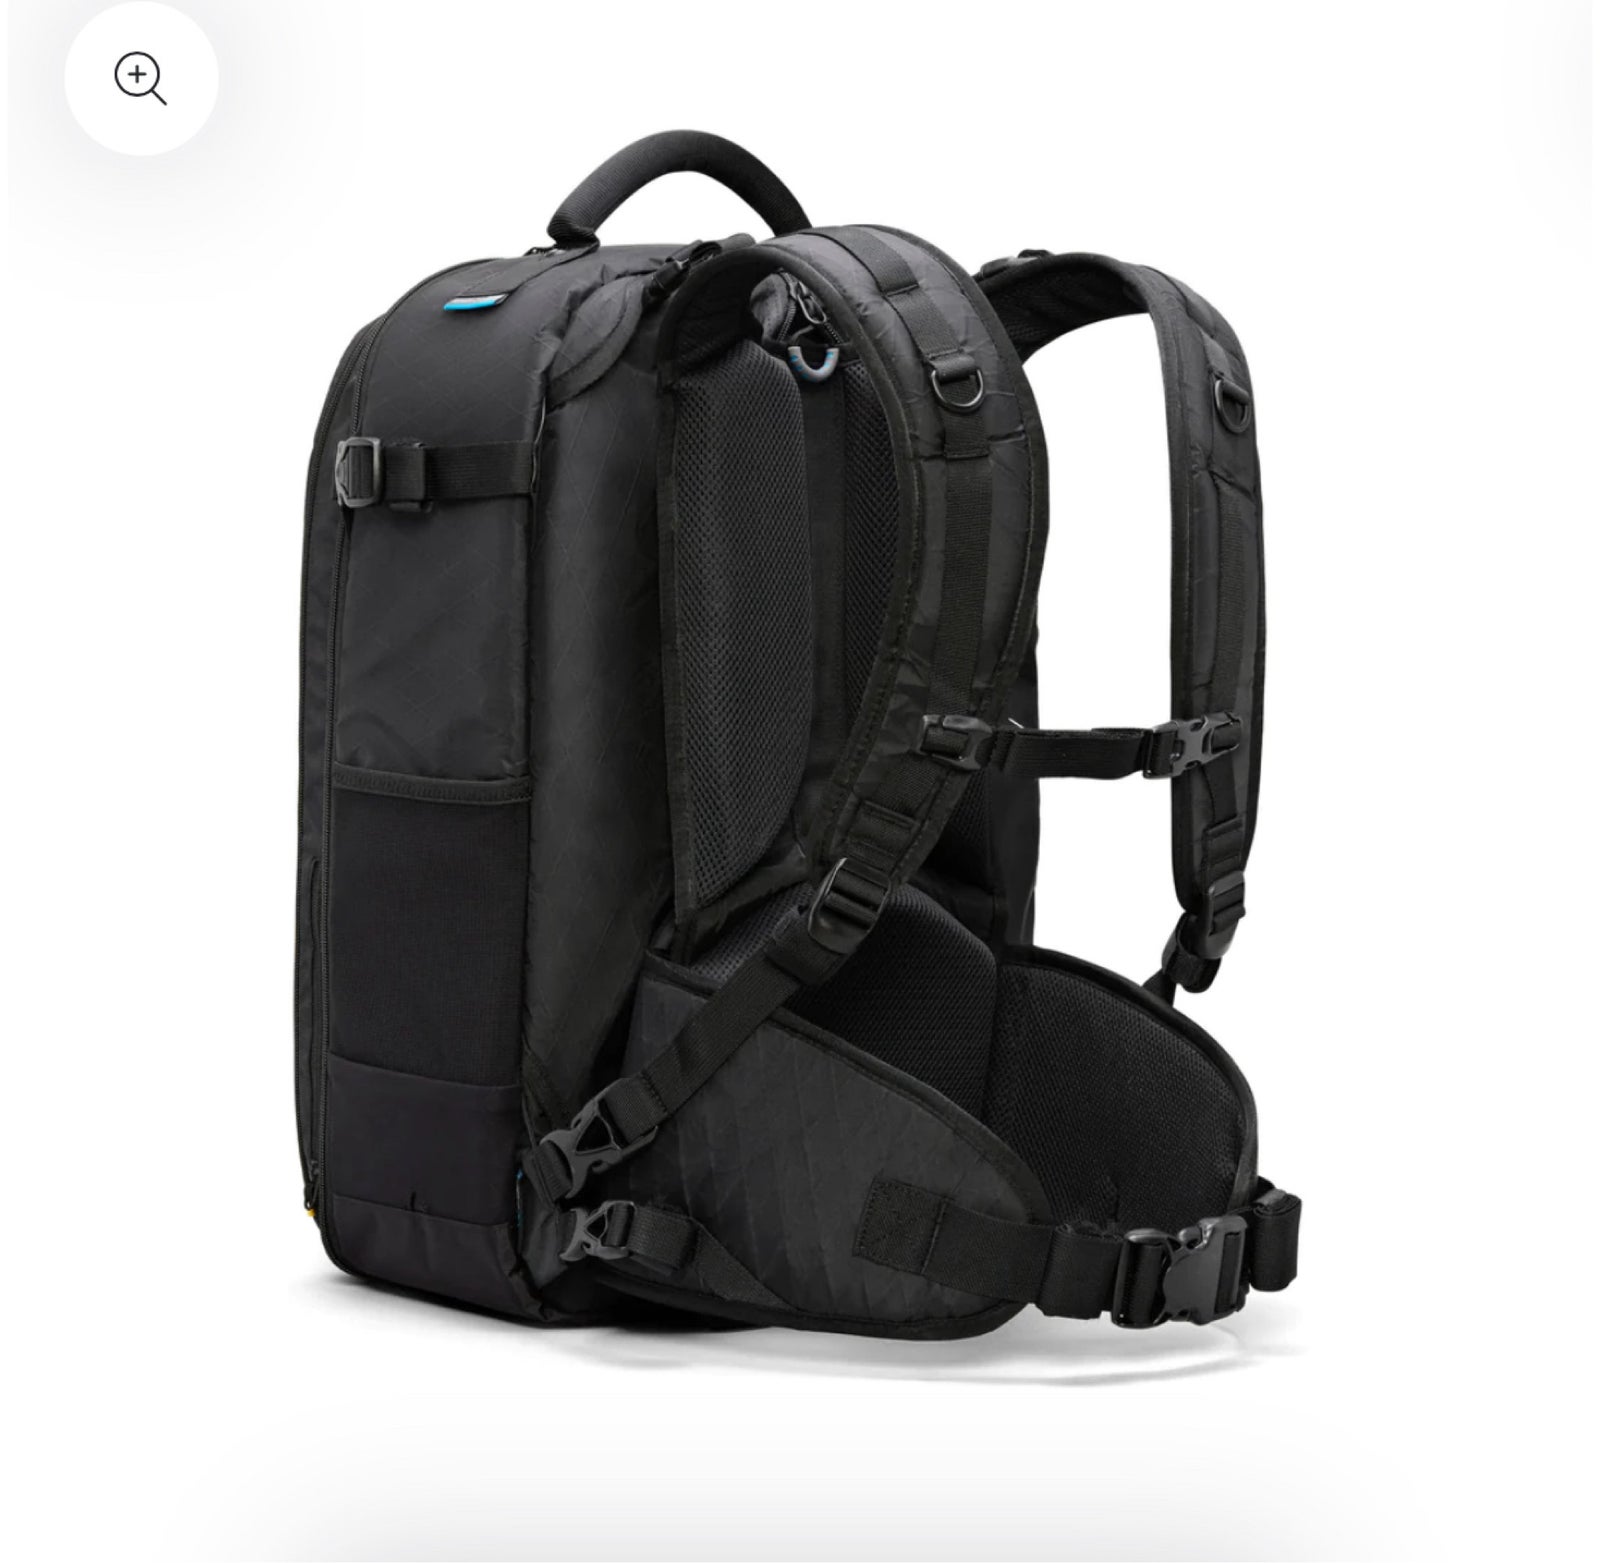 Foto backpack, Gura Gear, Kiboko 30 liter